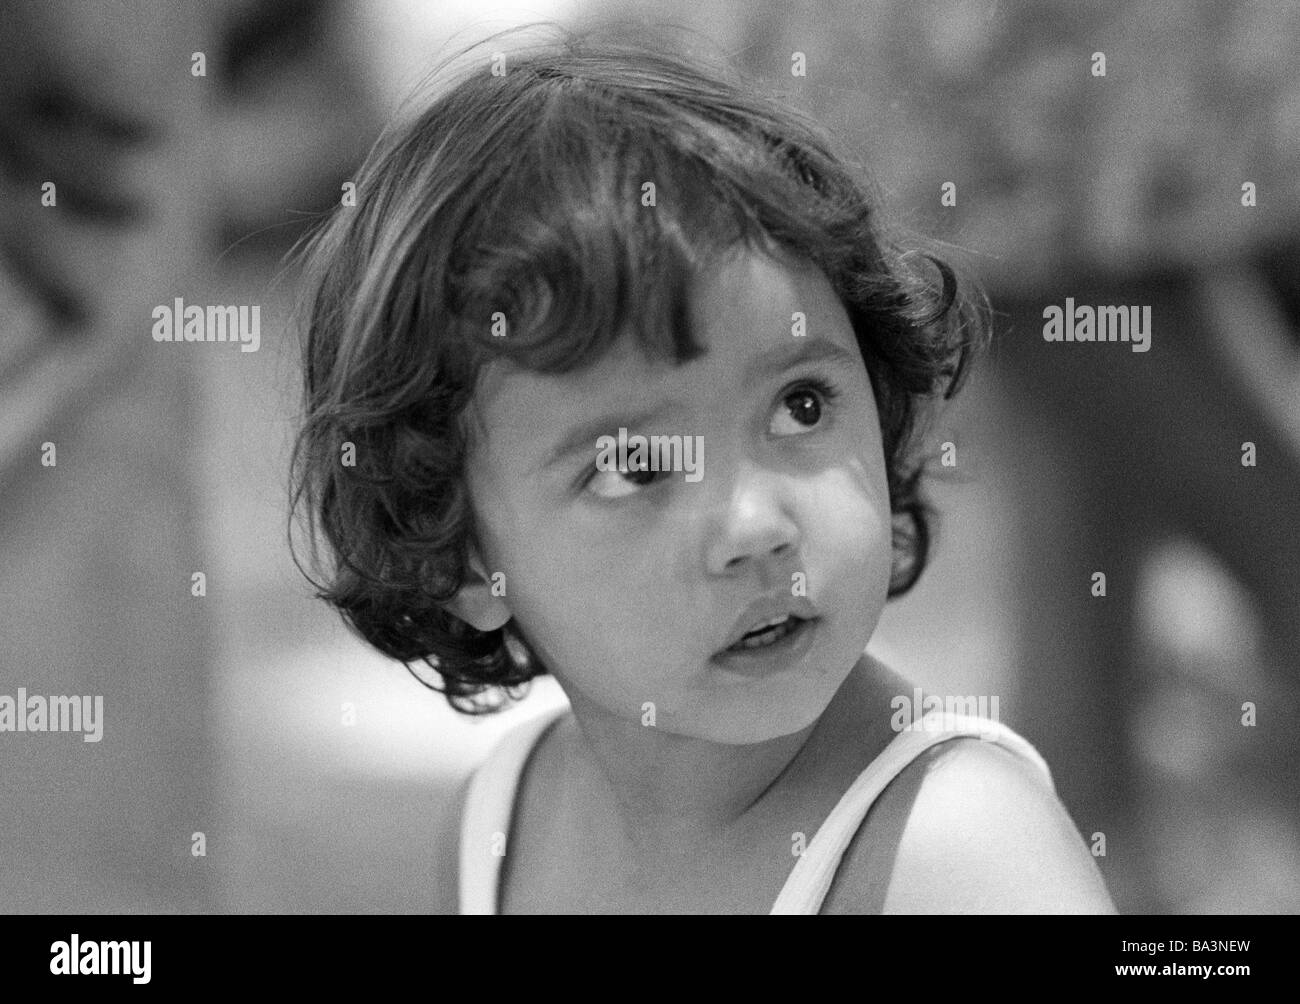 Negli anni settanta, foto in bianco e nero, persone, bambini, bambina, ritratto, aspetto di indagine, di età compresa tra i 4 e i 6 anni, Brasile, Minas Gerais, Belo Horizonte Foto Stock